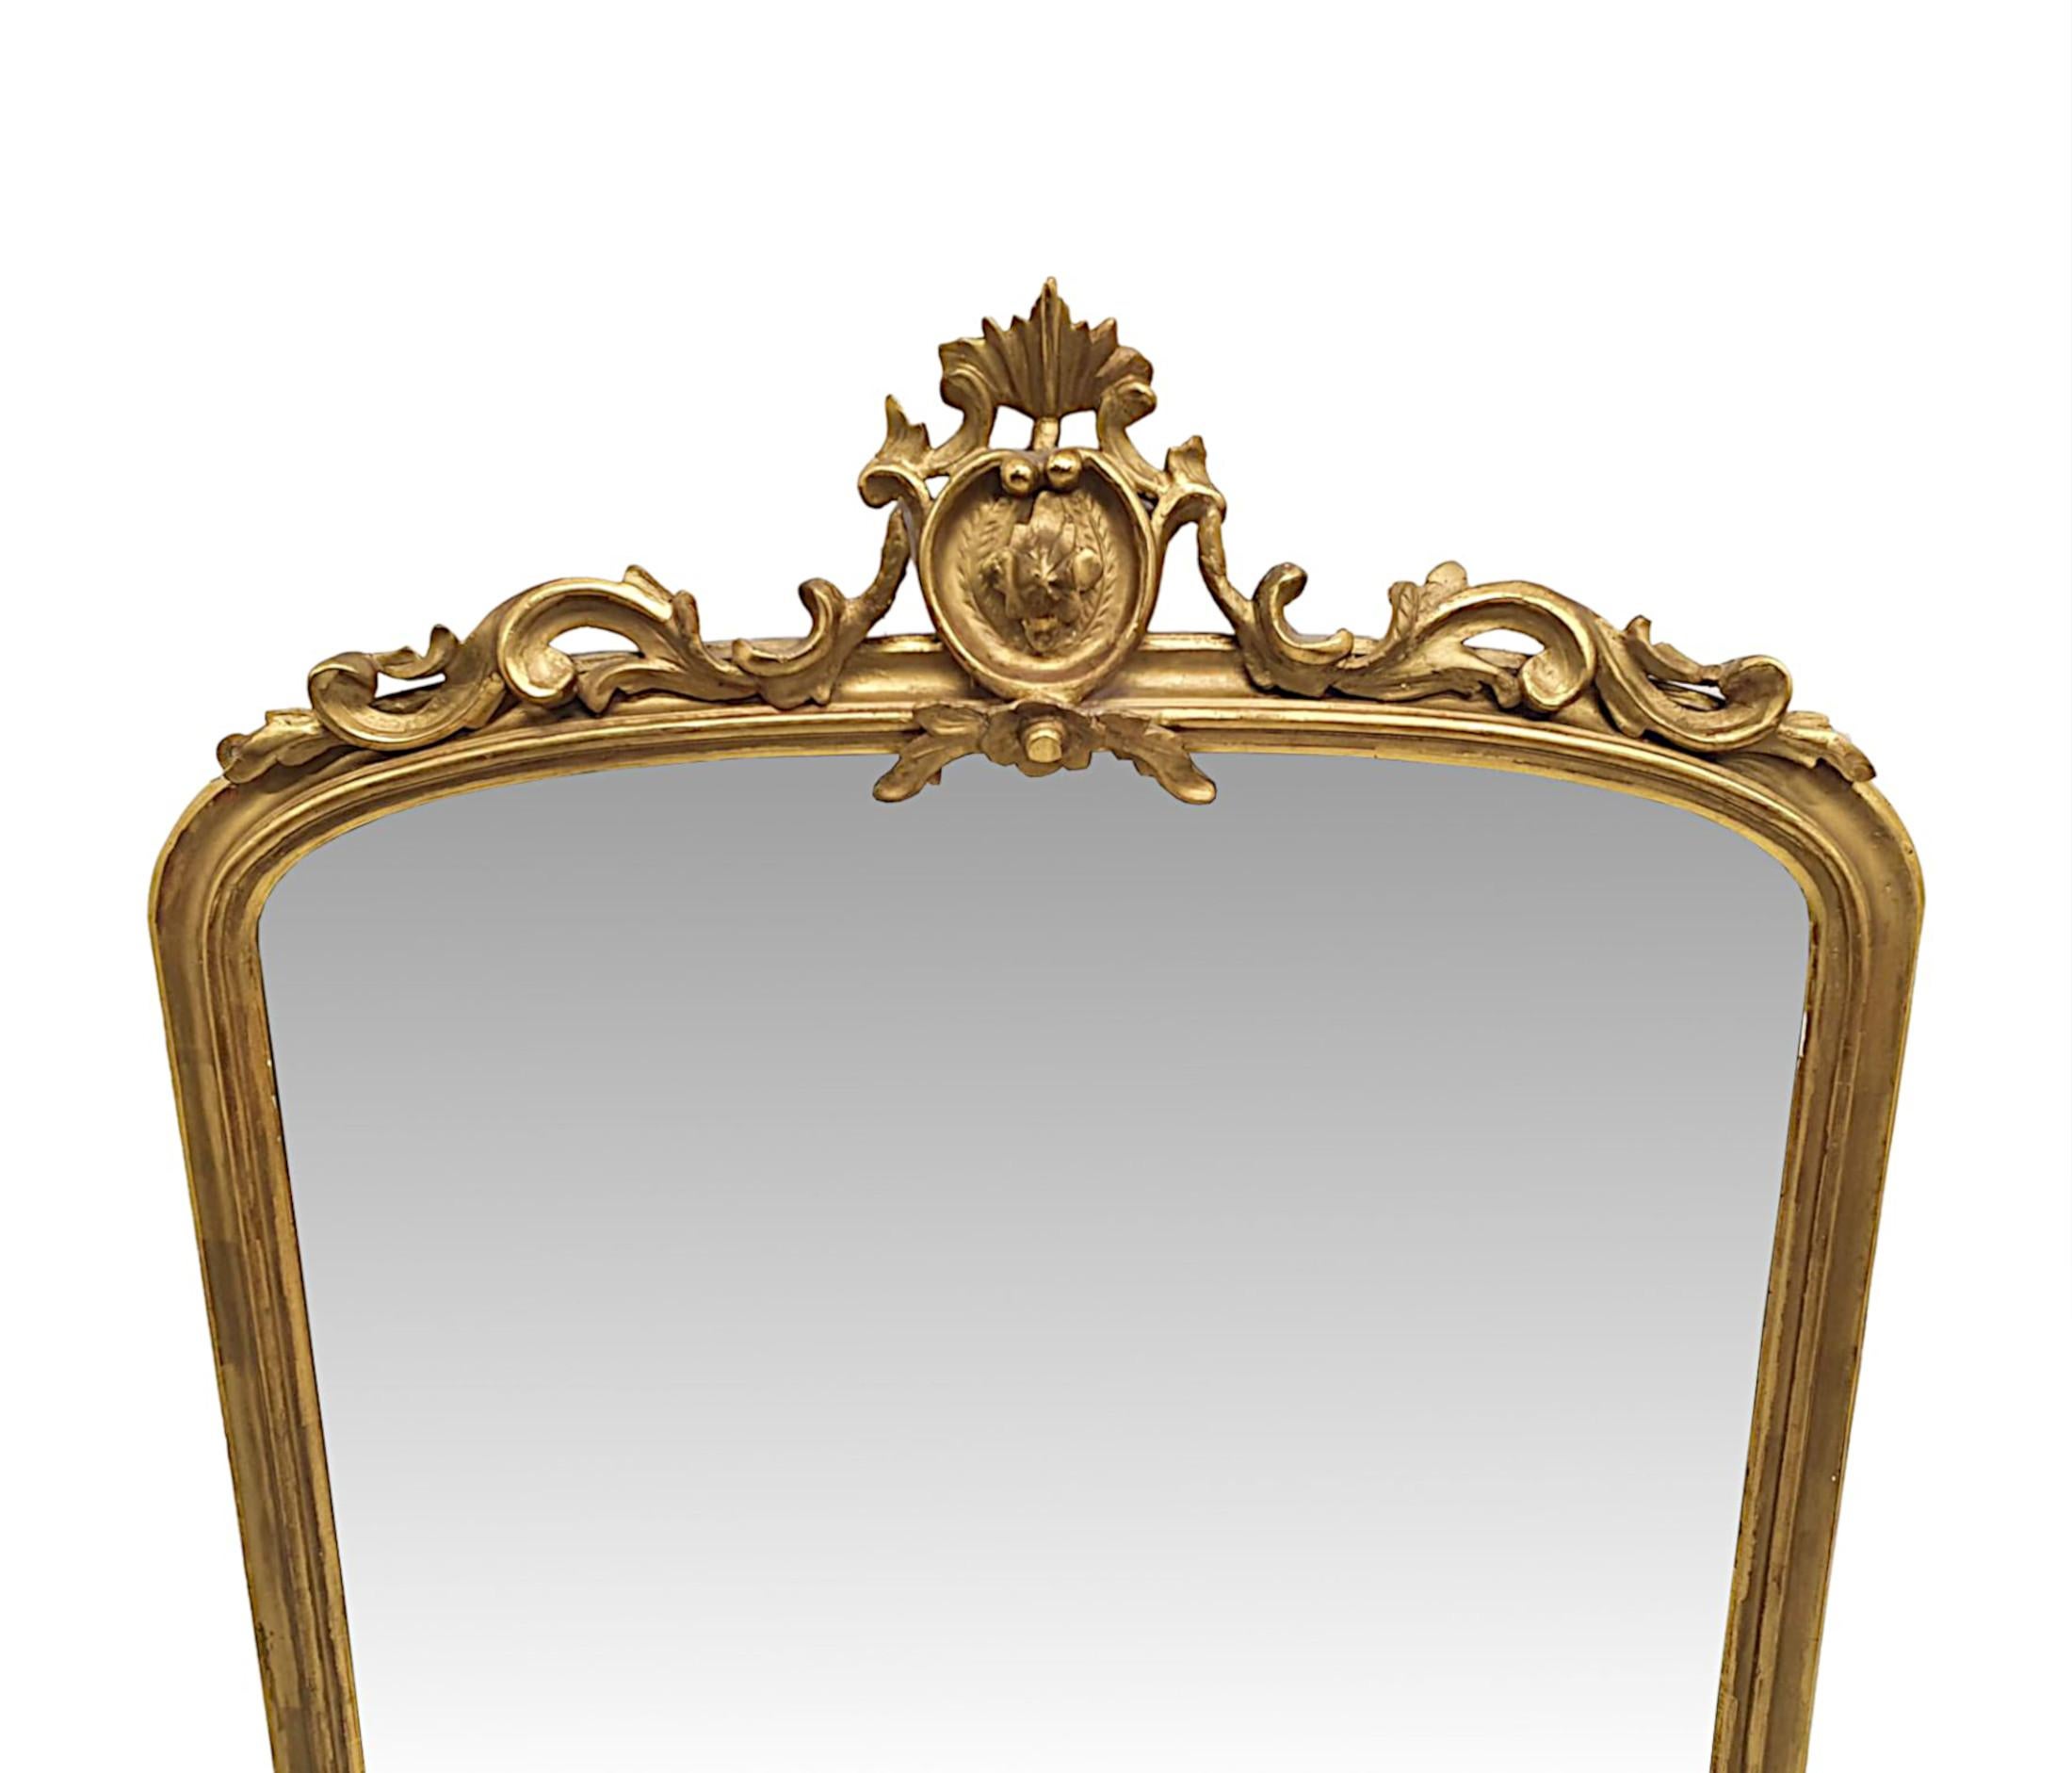 Un fabuleux miroir en bois doré du 19ème siècle.  La plaque de verre miroir de forme arquée est enchâssée dans un superbe cadre en bois doré sculpté à la main, mouluré et percé, surmonté d'un élégant écusson centré composé d'un cartouche central et